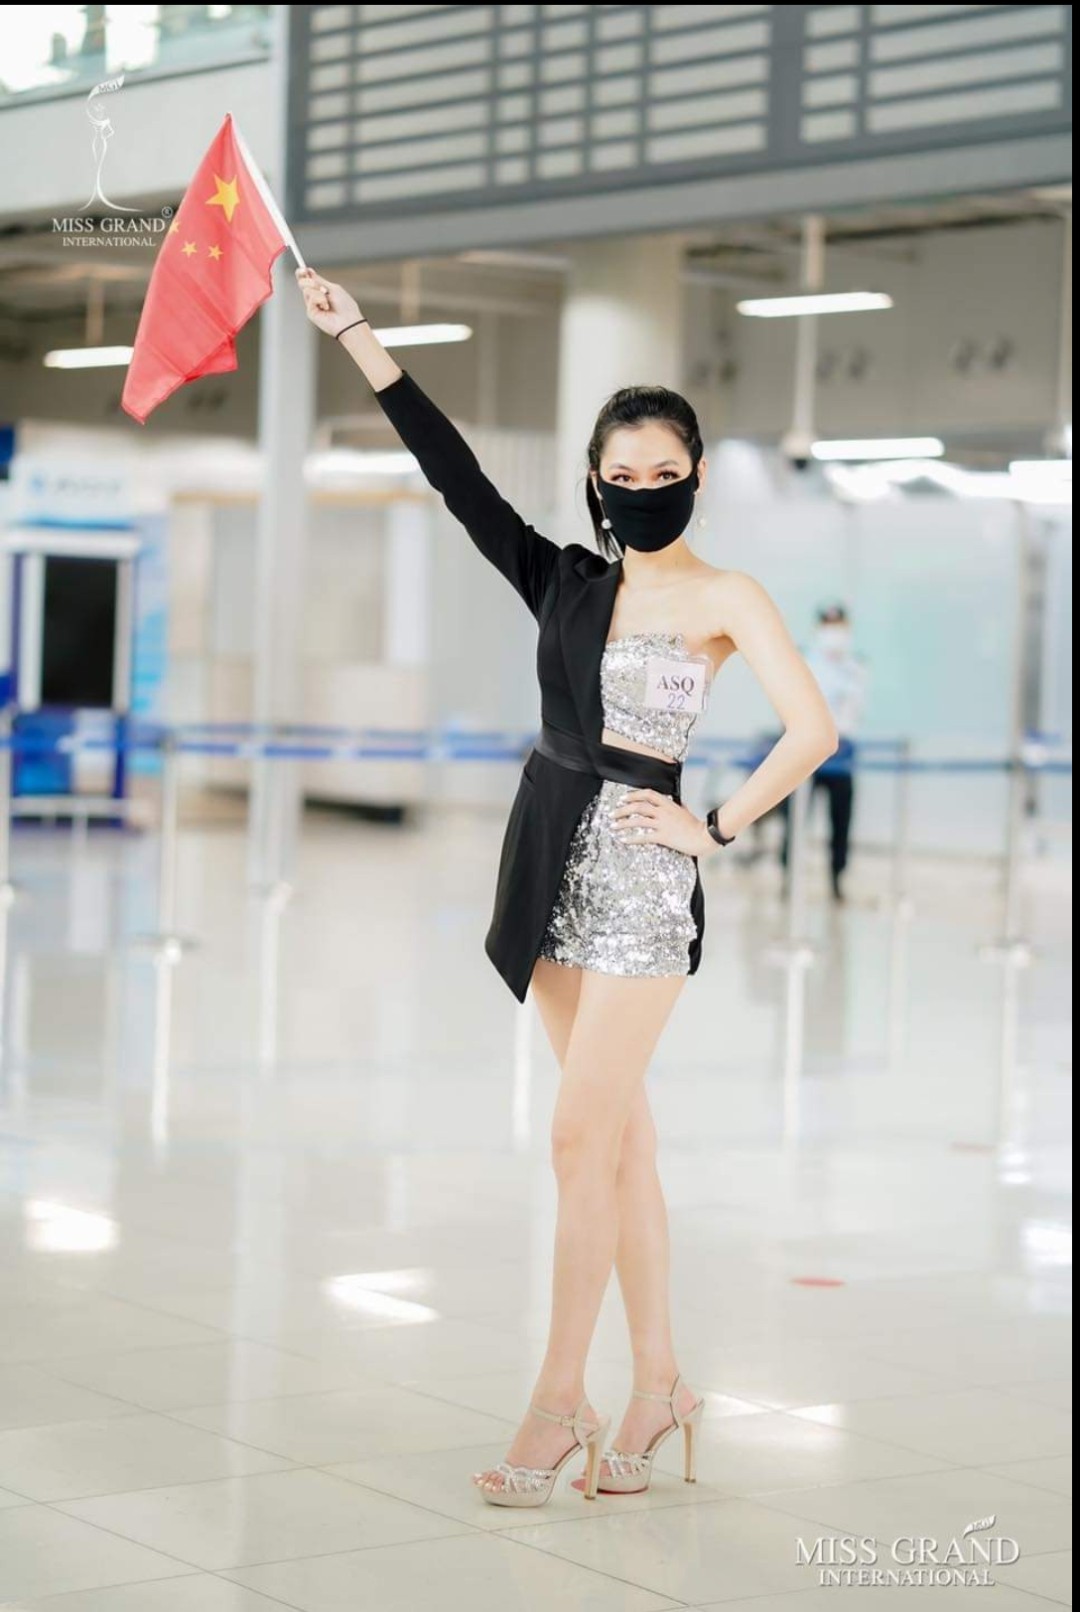 Hoa hậu Trung Quốc cũng chọn cho mình chiếc khẩu trang đen đơn giản, khiến người đối diện không khỏi liên tưởng đến hình ảnh Ninja. Cô mặc chiếc váy bất đối xứng khoe vóc dáng nuột nà.